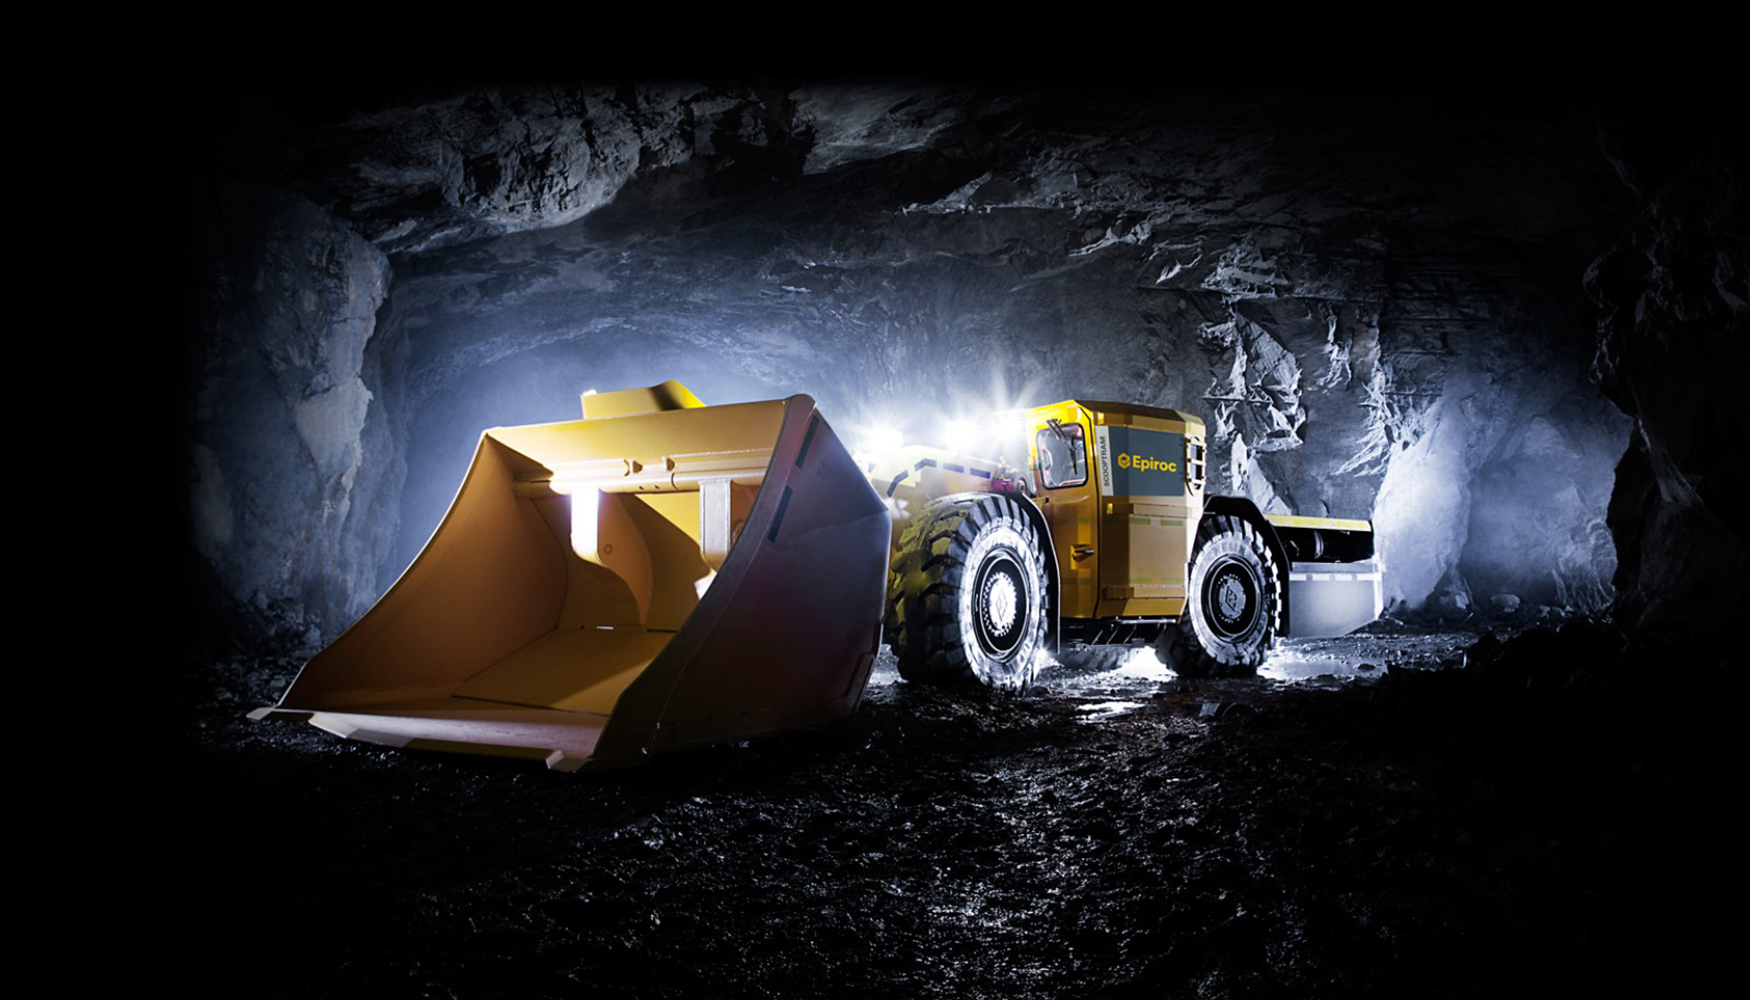 El pedido de Shandong Gold Group incluye varios equipos para minera subterrnea